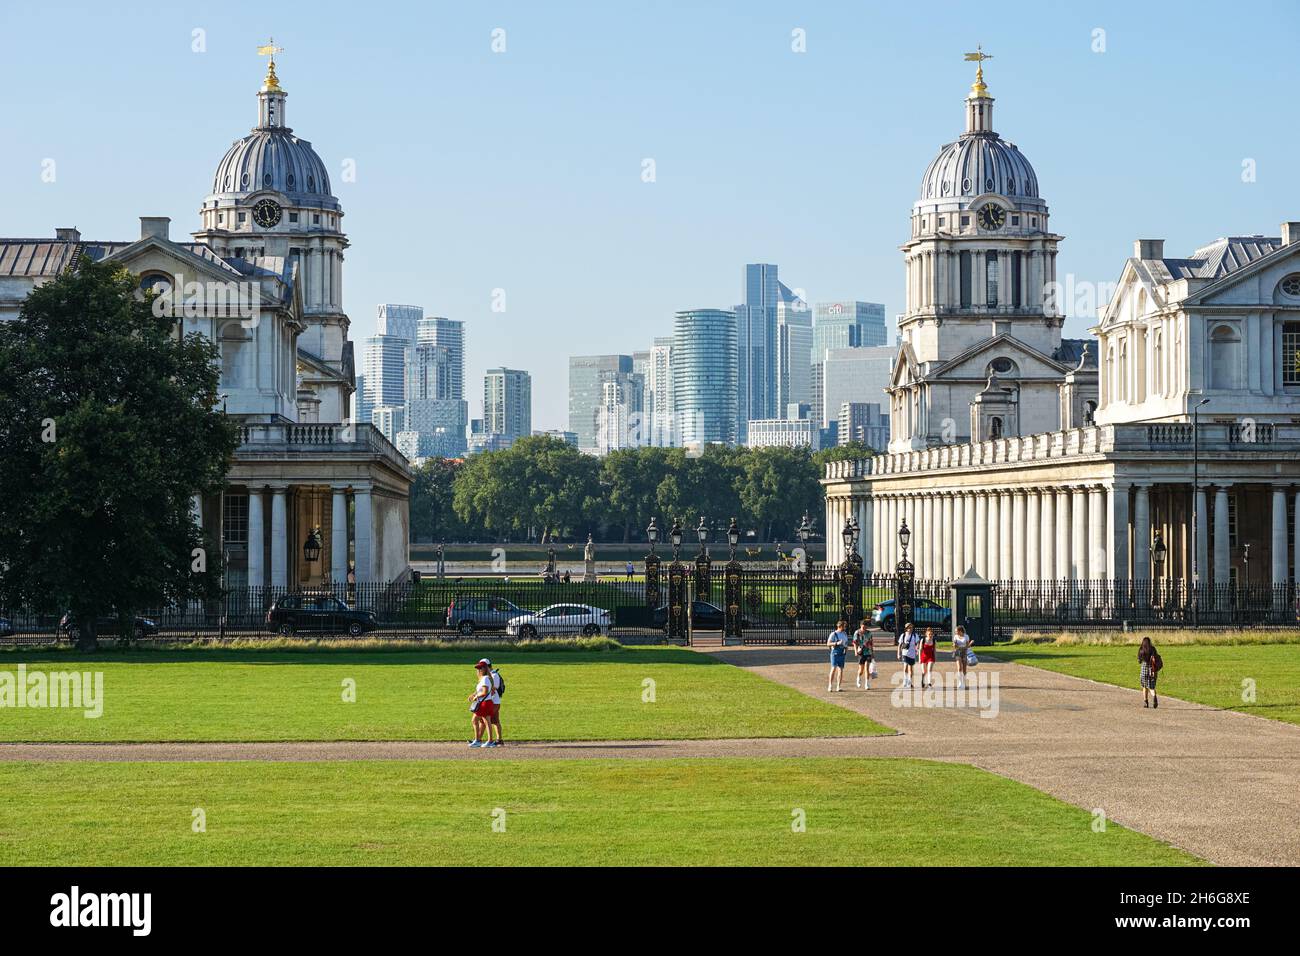 University of Greenwich, Old Royal Naval College con grattacieli Canary Wharf sullo sfondo, Londra Inghilterra Regno Unito Foto Stock